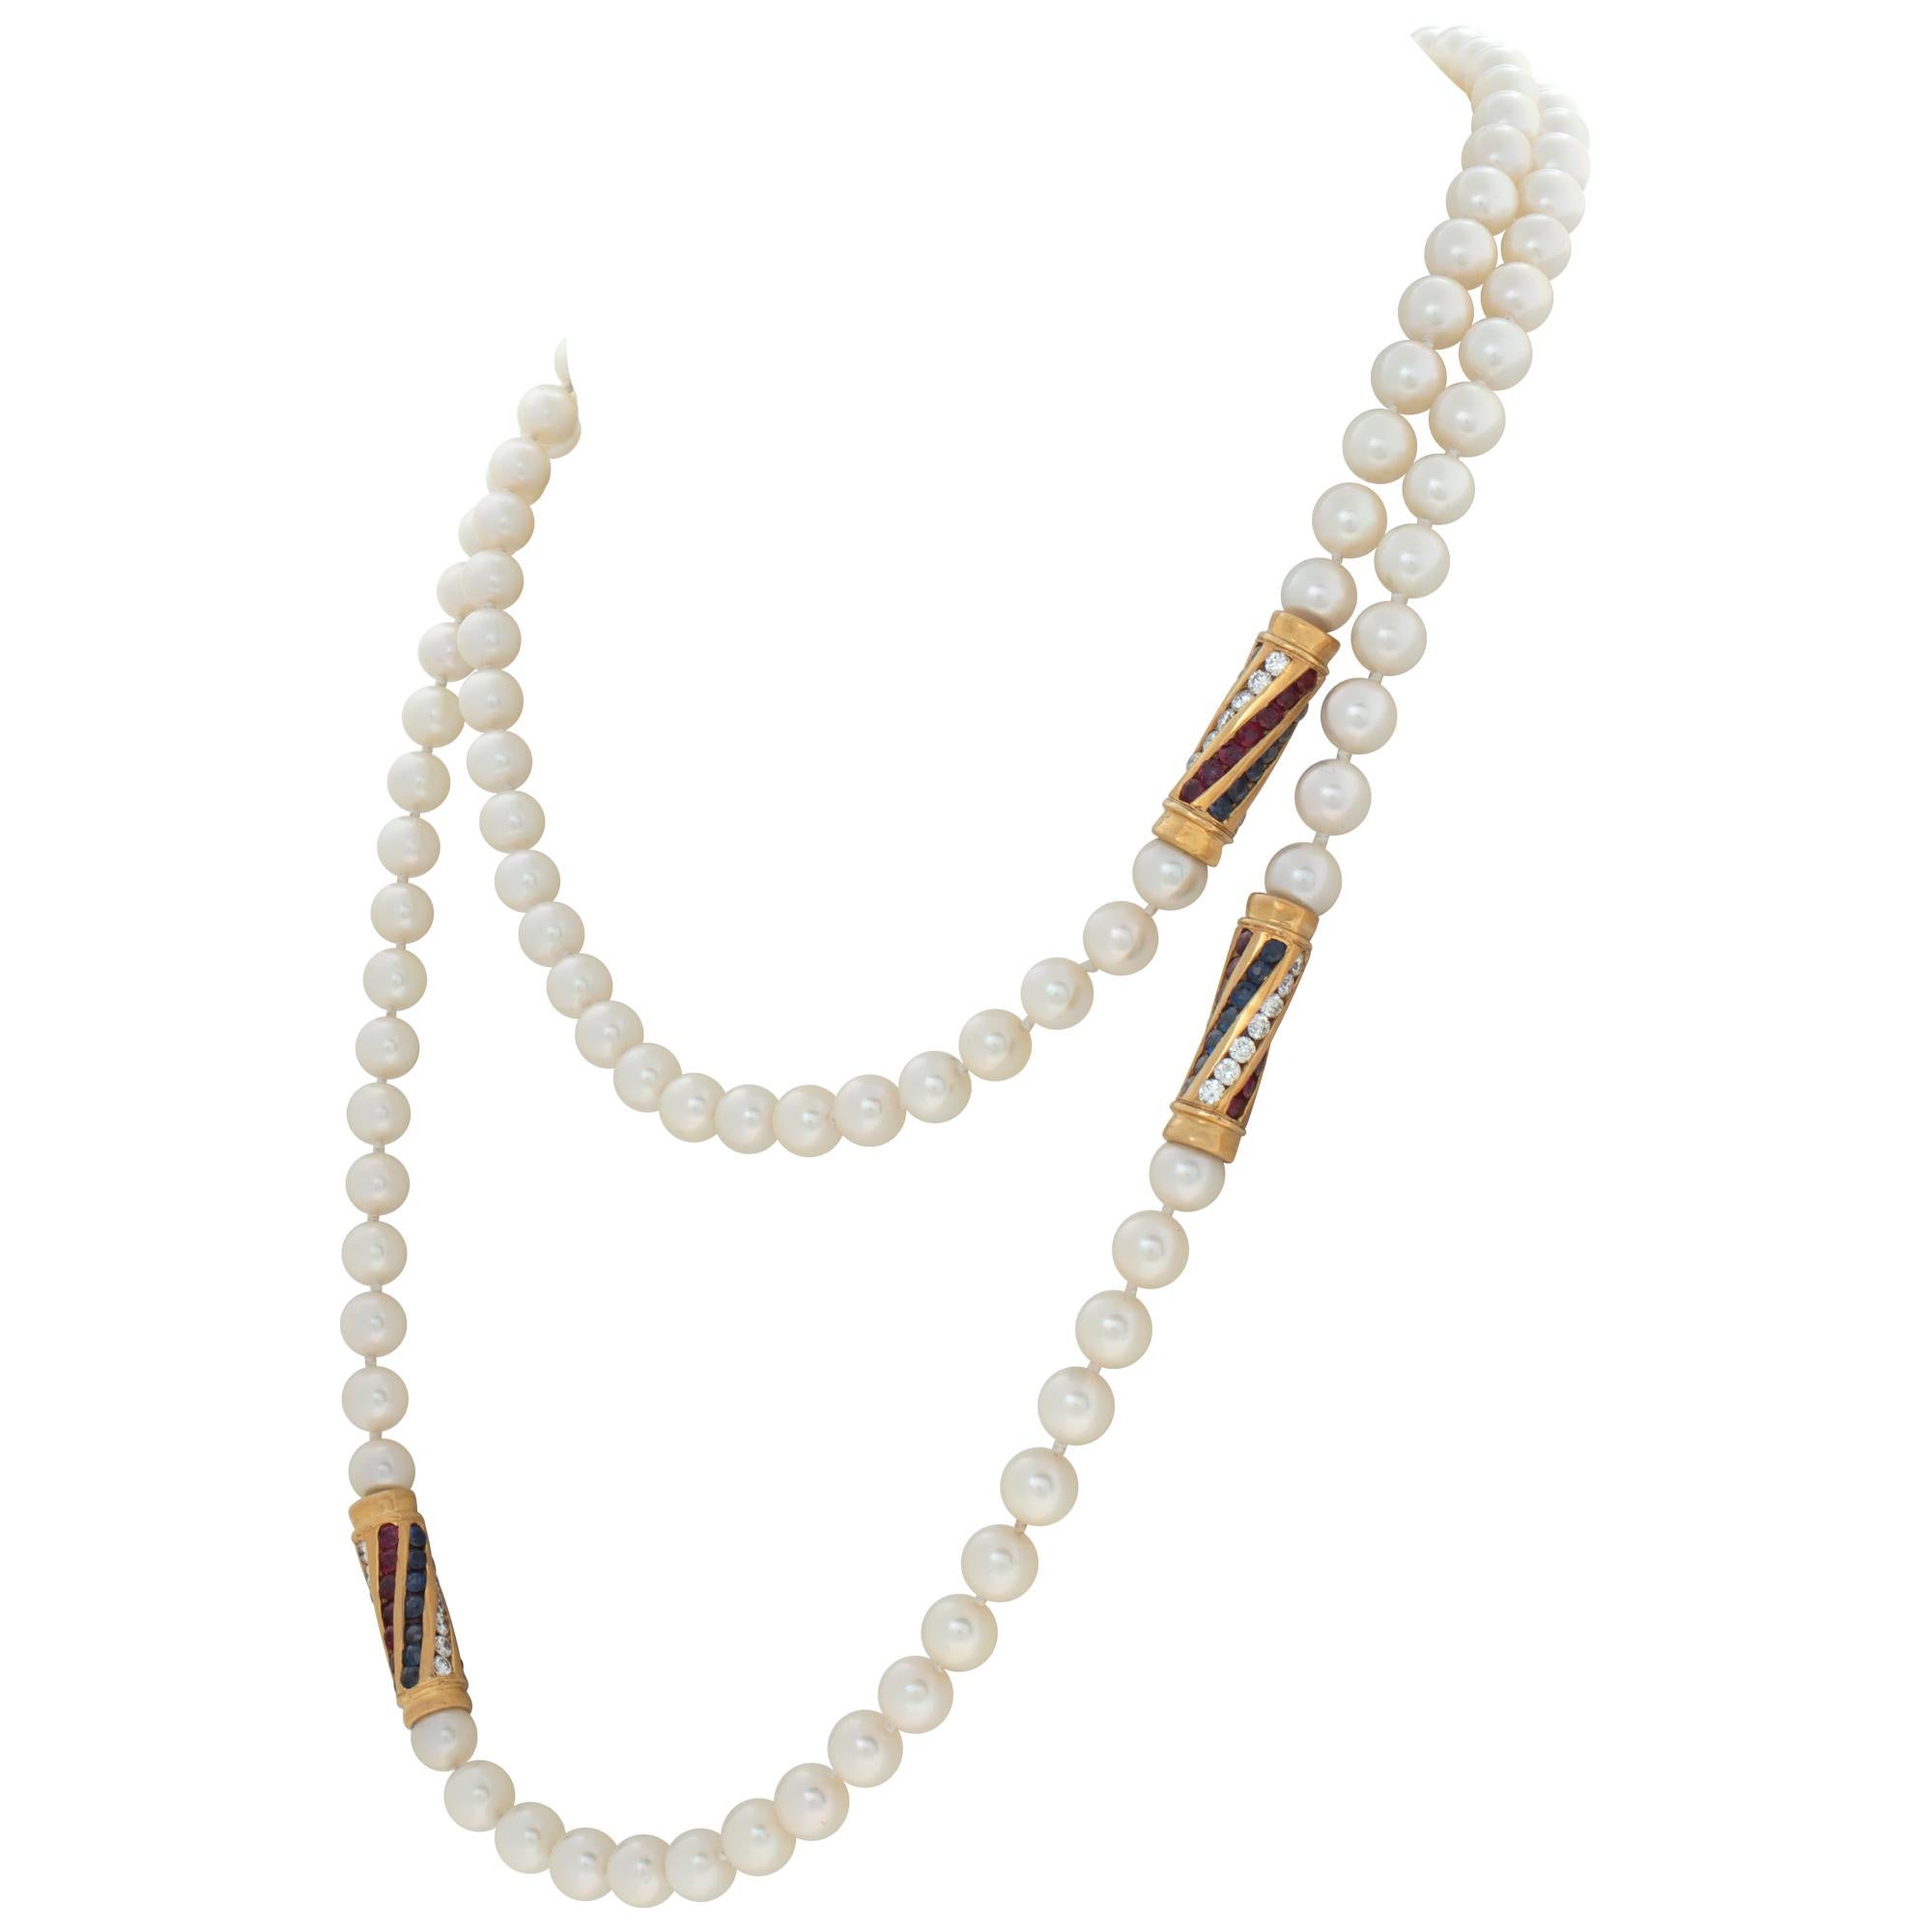 Collar de perlas Akoya de 6 x 6,5 mm, de longitud Opera (36 pulgadas), con cuatro estaciones de oro arremolinadas con diamantes, rubíes y zafiros engastados en oro amarillo de 18 quilates para completar el look glamuroso. Peso en quilates de los